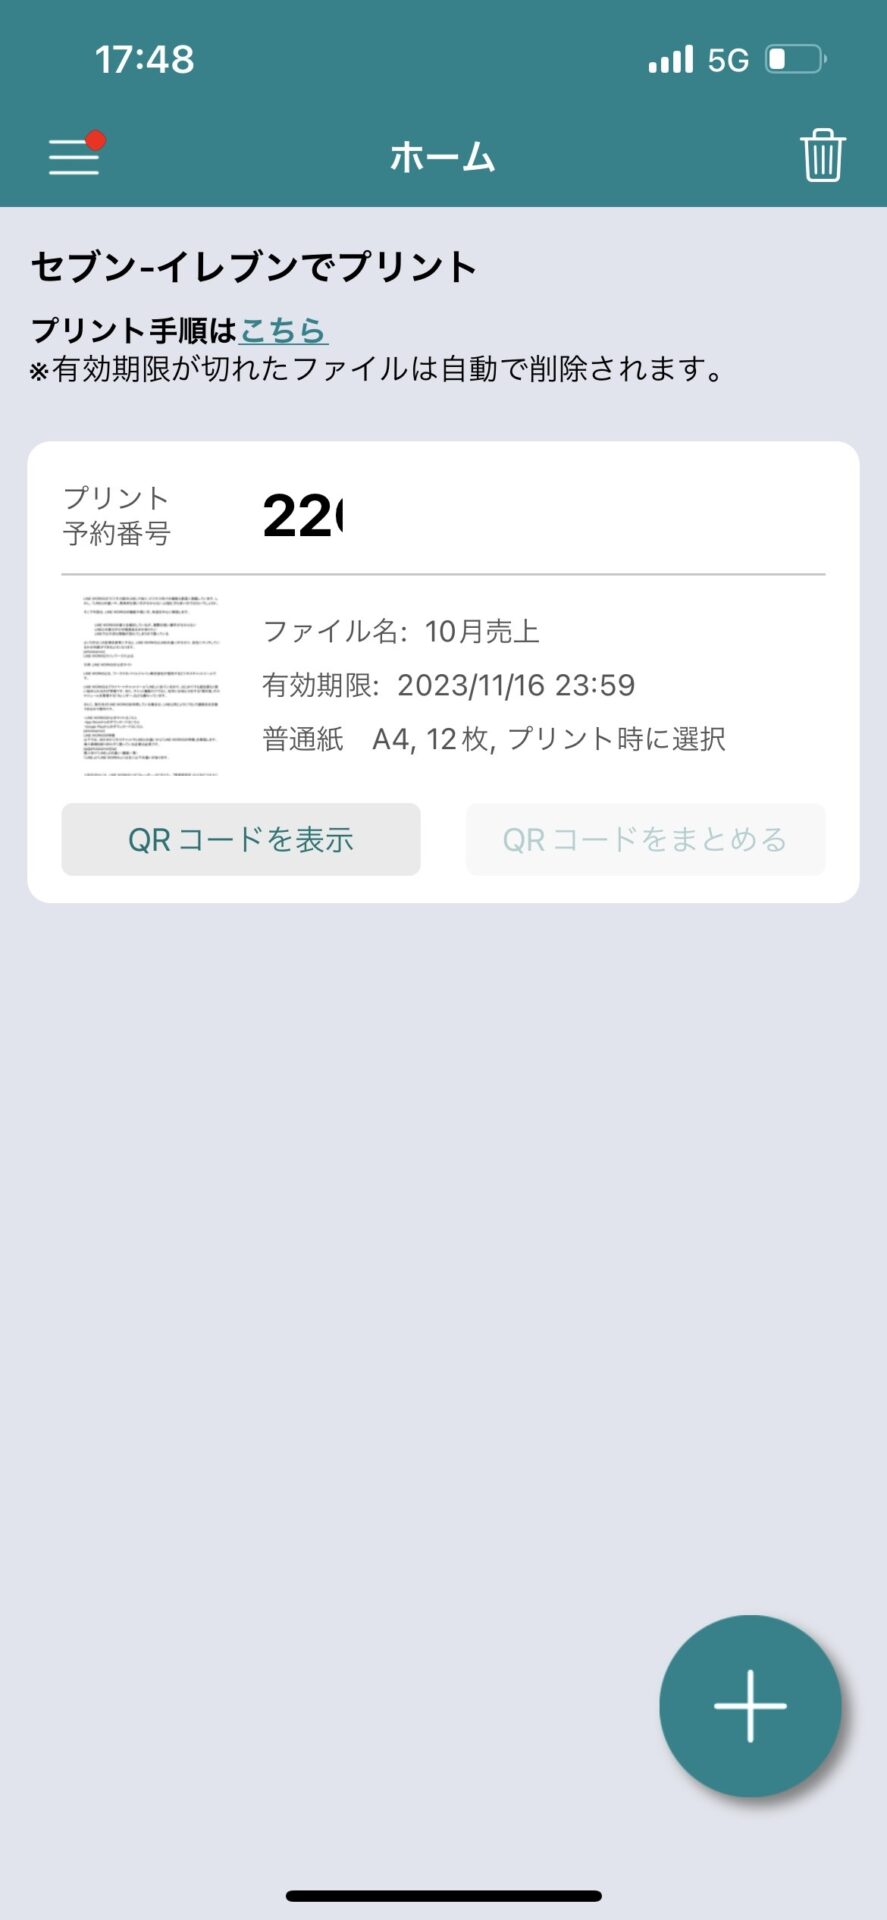 かんたんnetprintアプリの予約番号表示画面